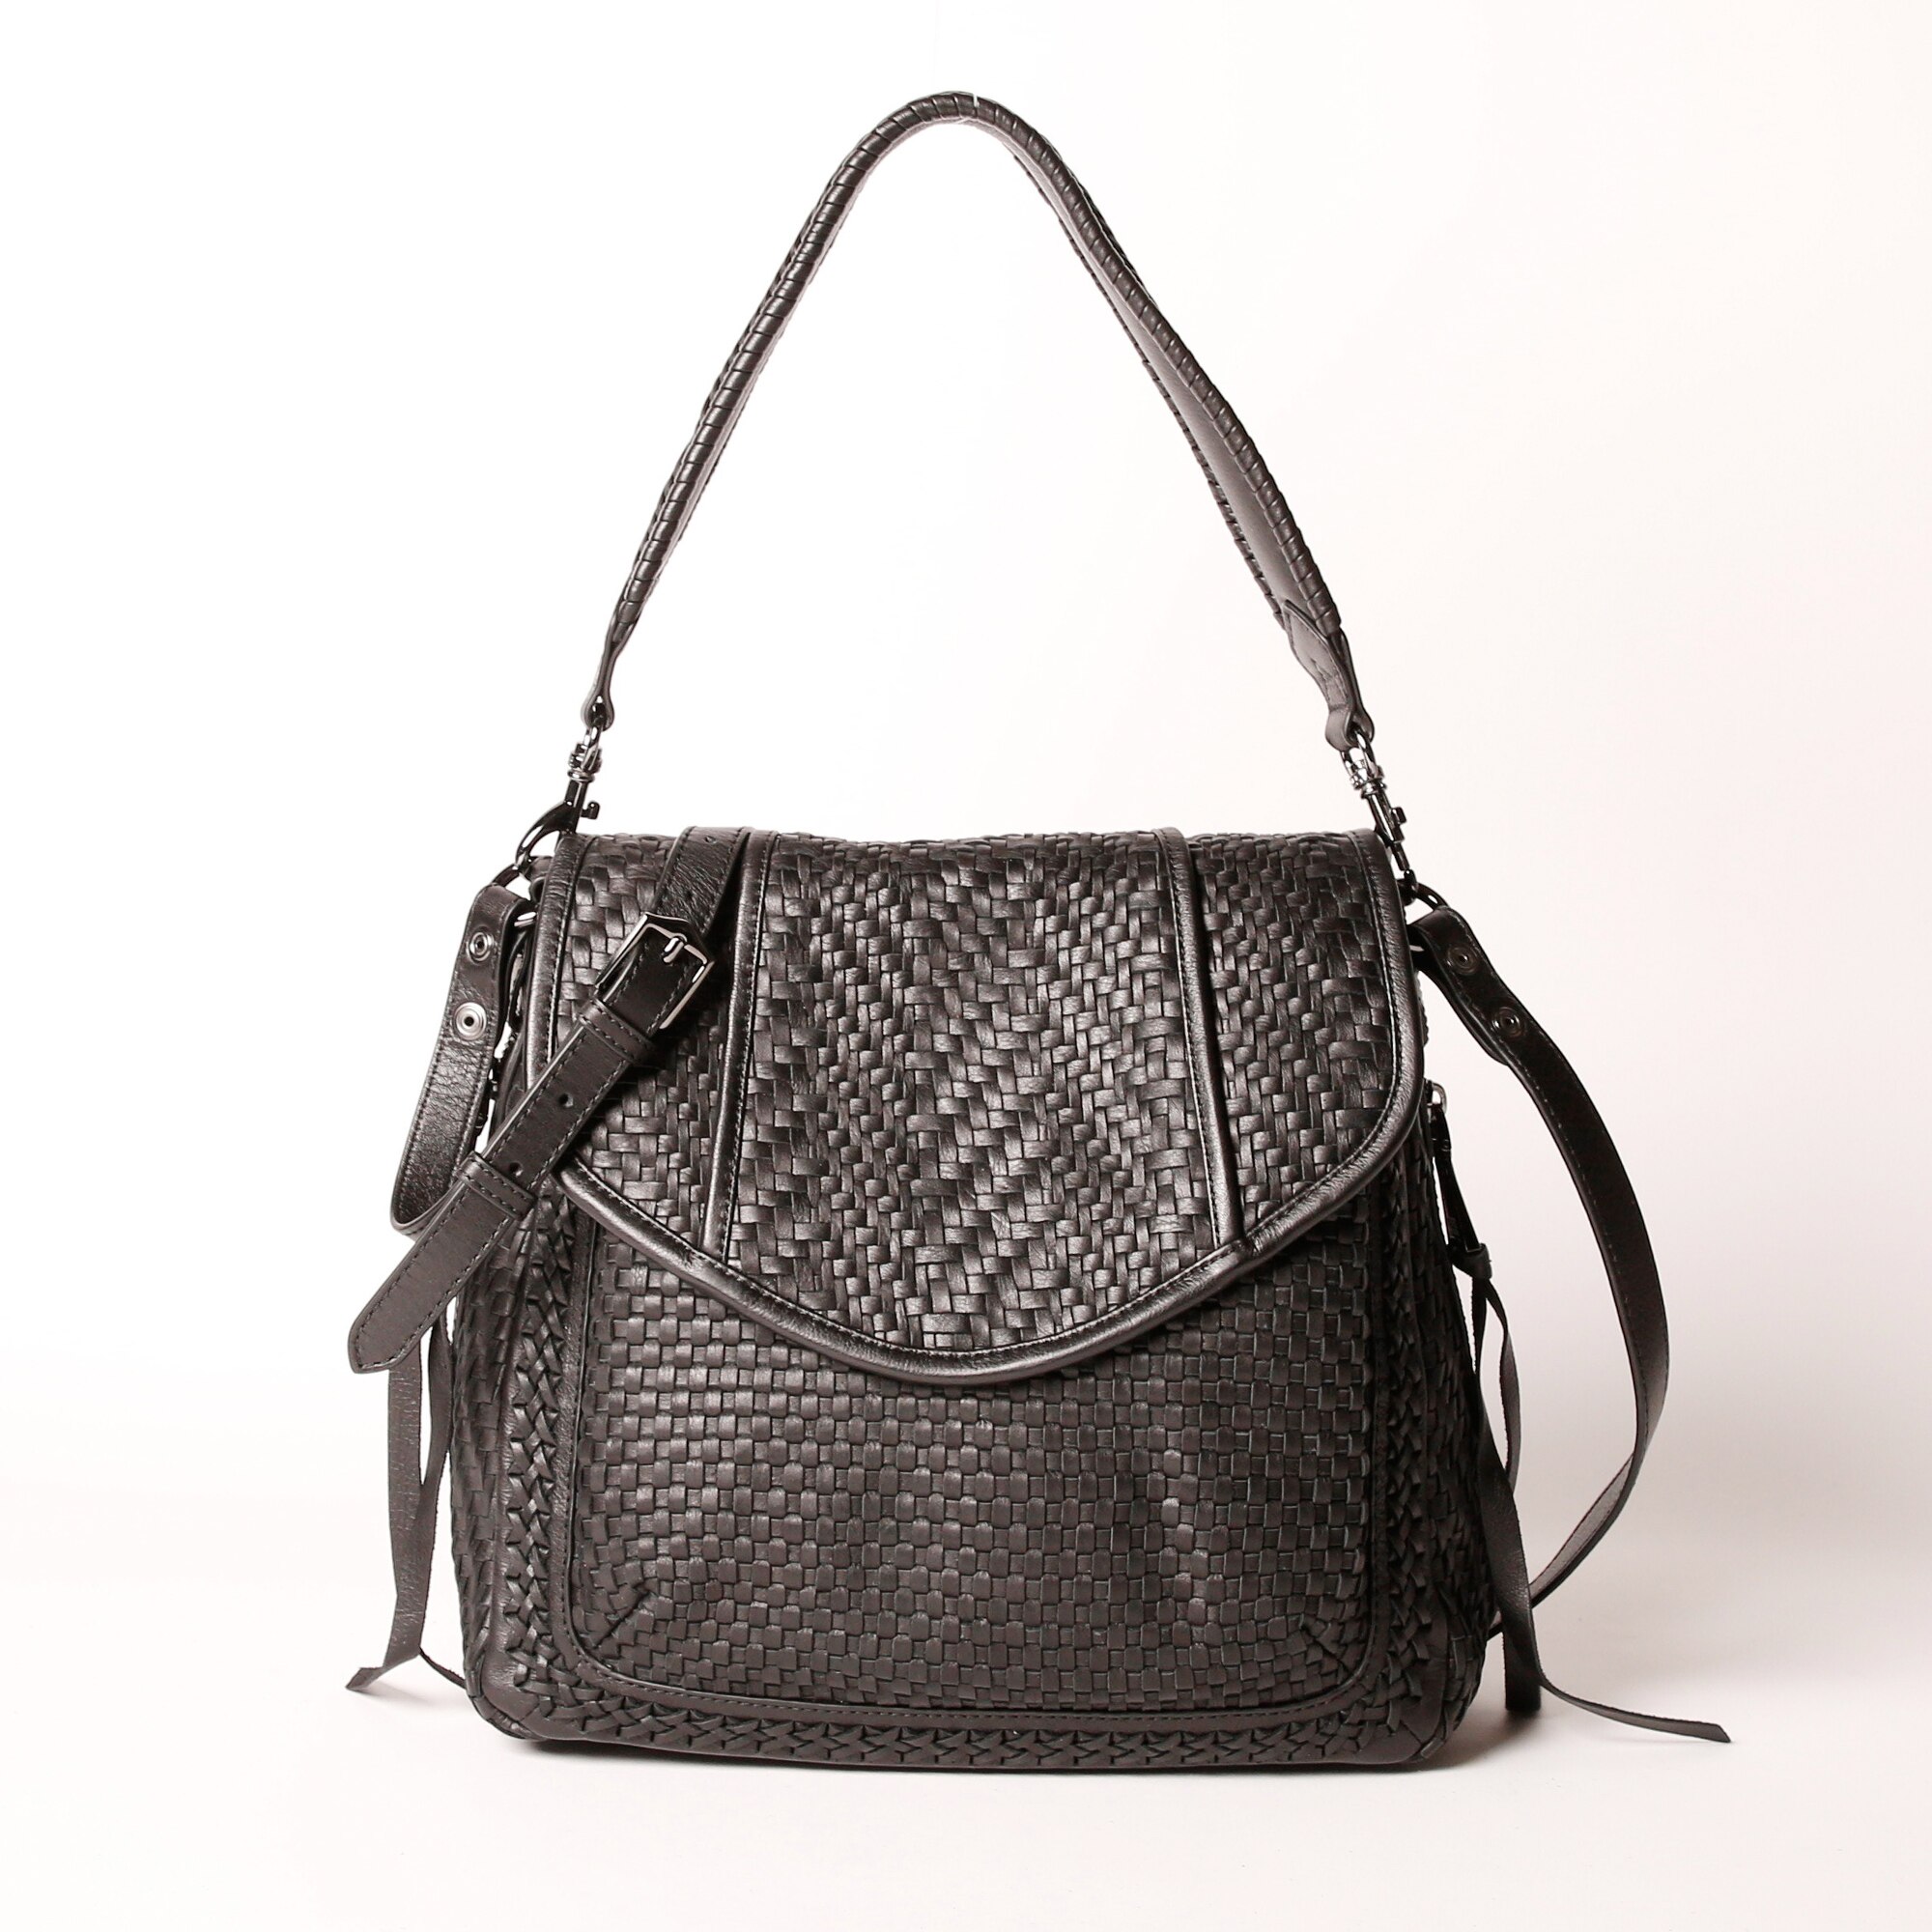 Nwt Aimee Kestenberg Purple Leather Handbag